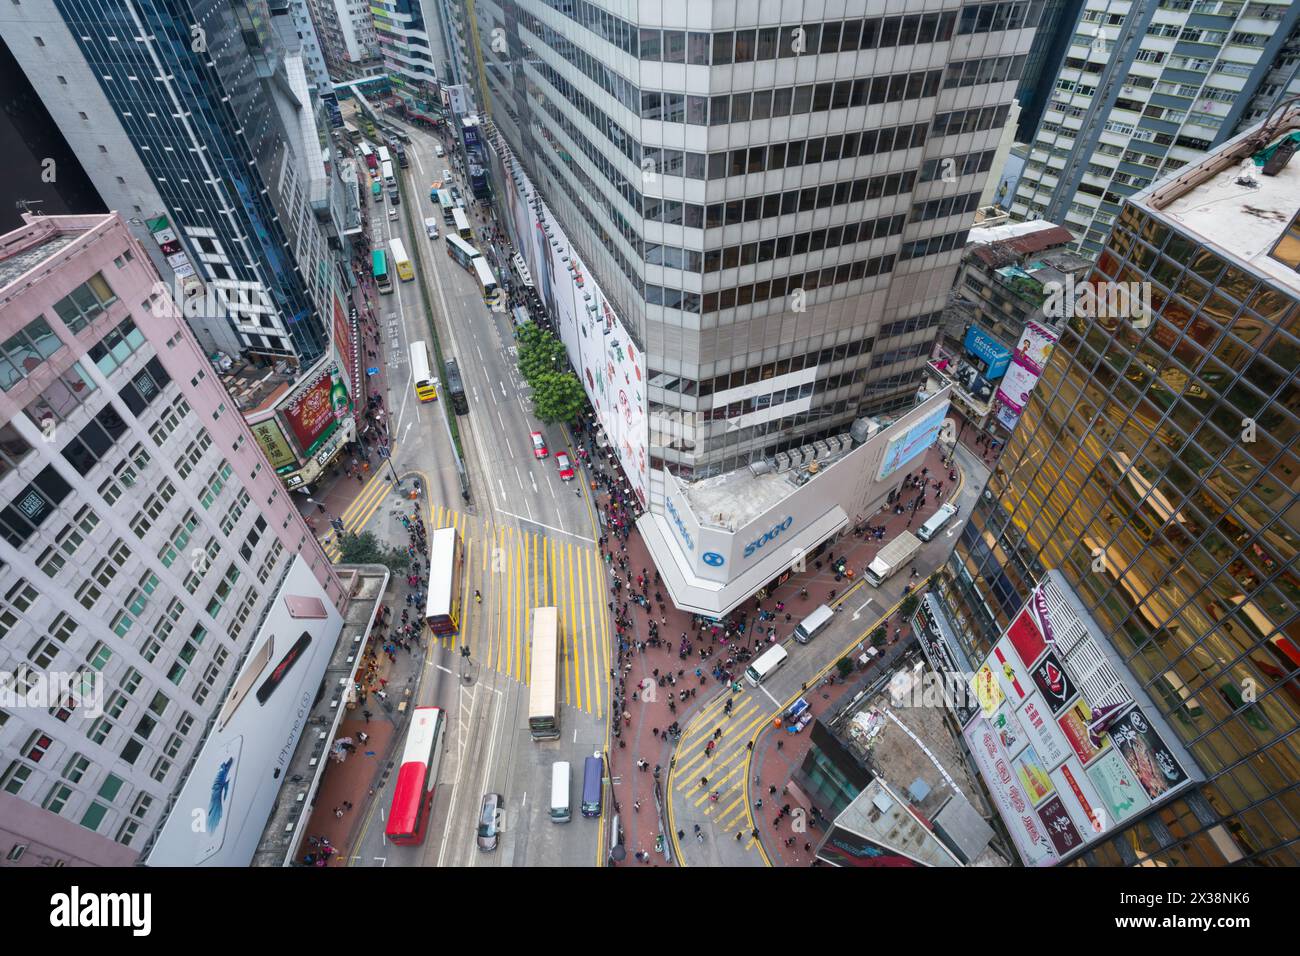 HONGKONG, CHINA - 3. Februar 2016: (Draufsicht) Straße in der Stadt. Hongkong ist eines der größten Geschäftszentren in Asien und der ganzen Welt und hat mehr gebaut Stockfoto